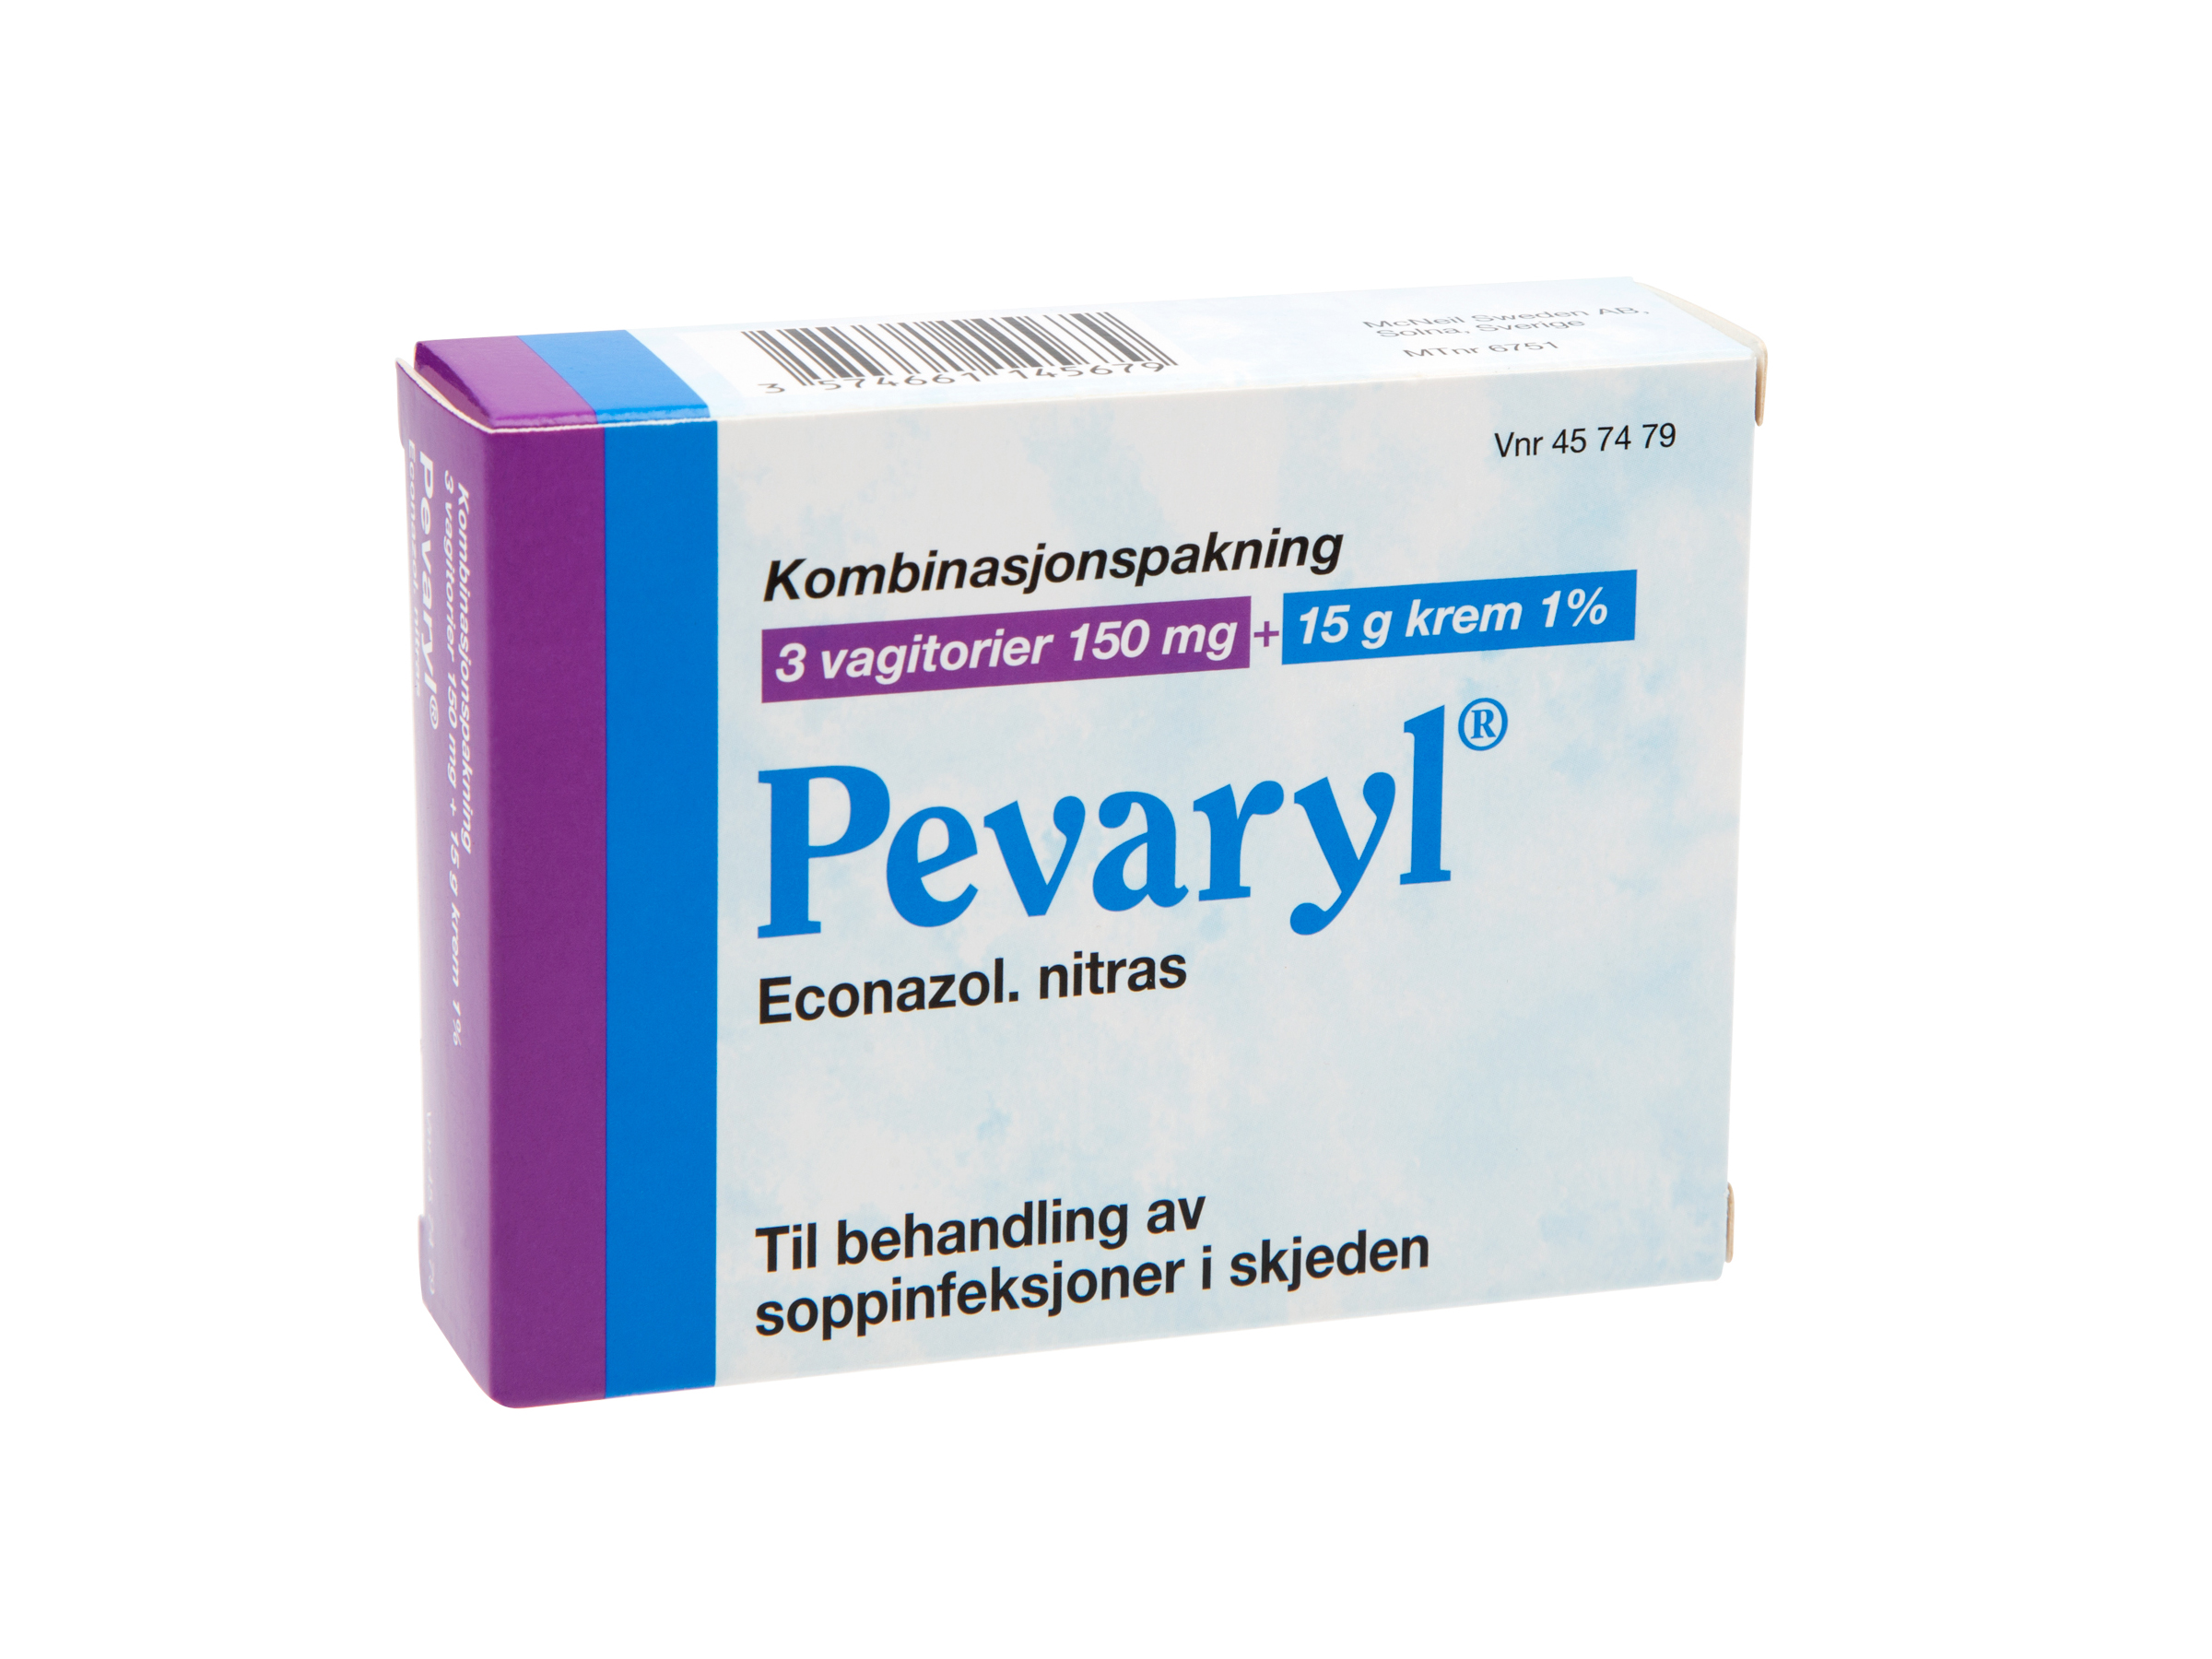 Pevaryl Kombinasjonspakke, 3 stk. 150 mg vagitorier og 15 gram 1% krem